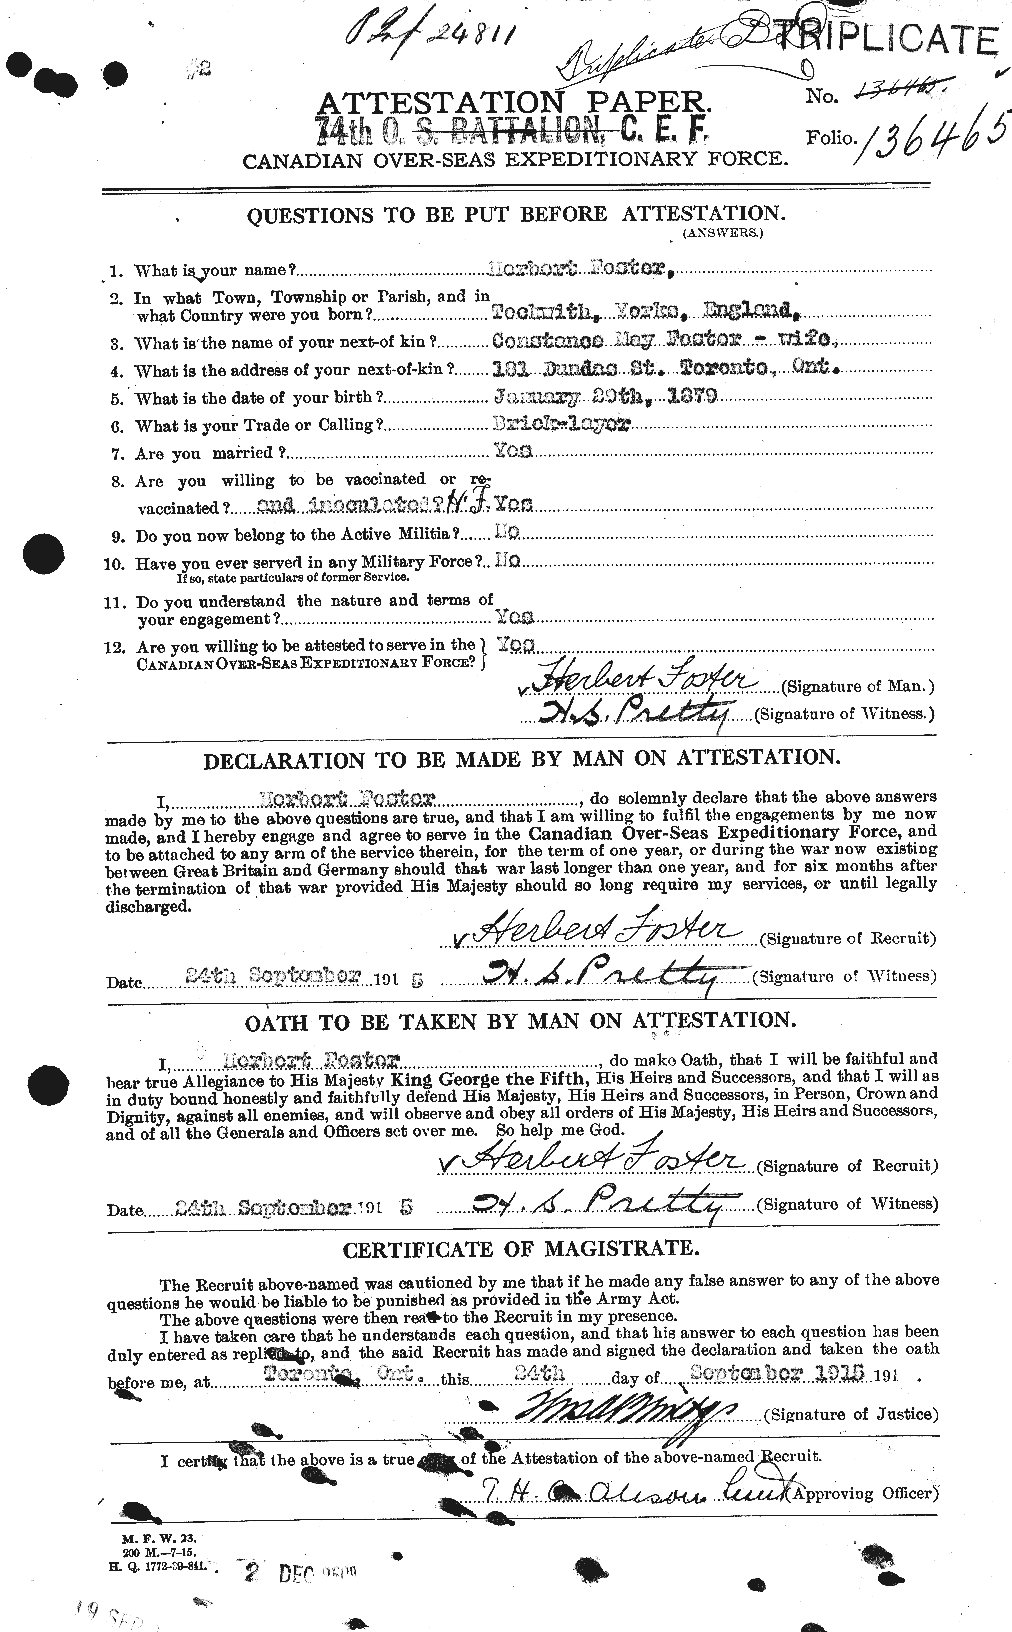 Dossiers du Personnel de la Première Guerre mondiale - CEC 333251a